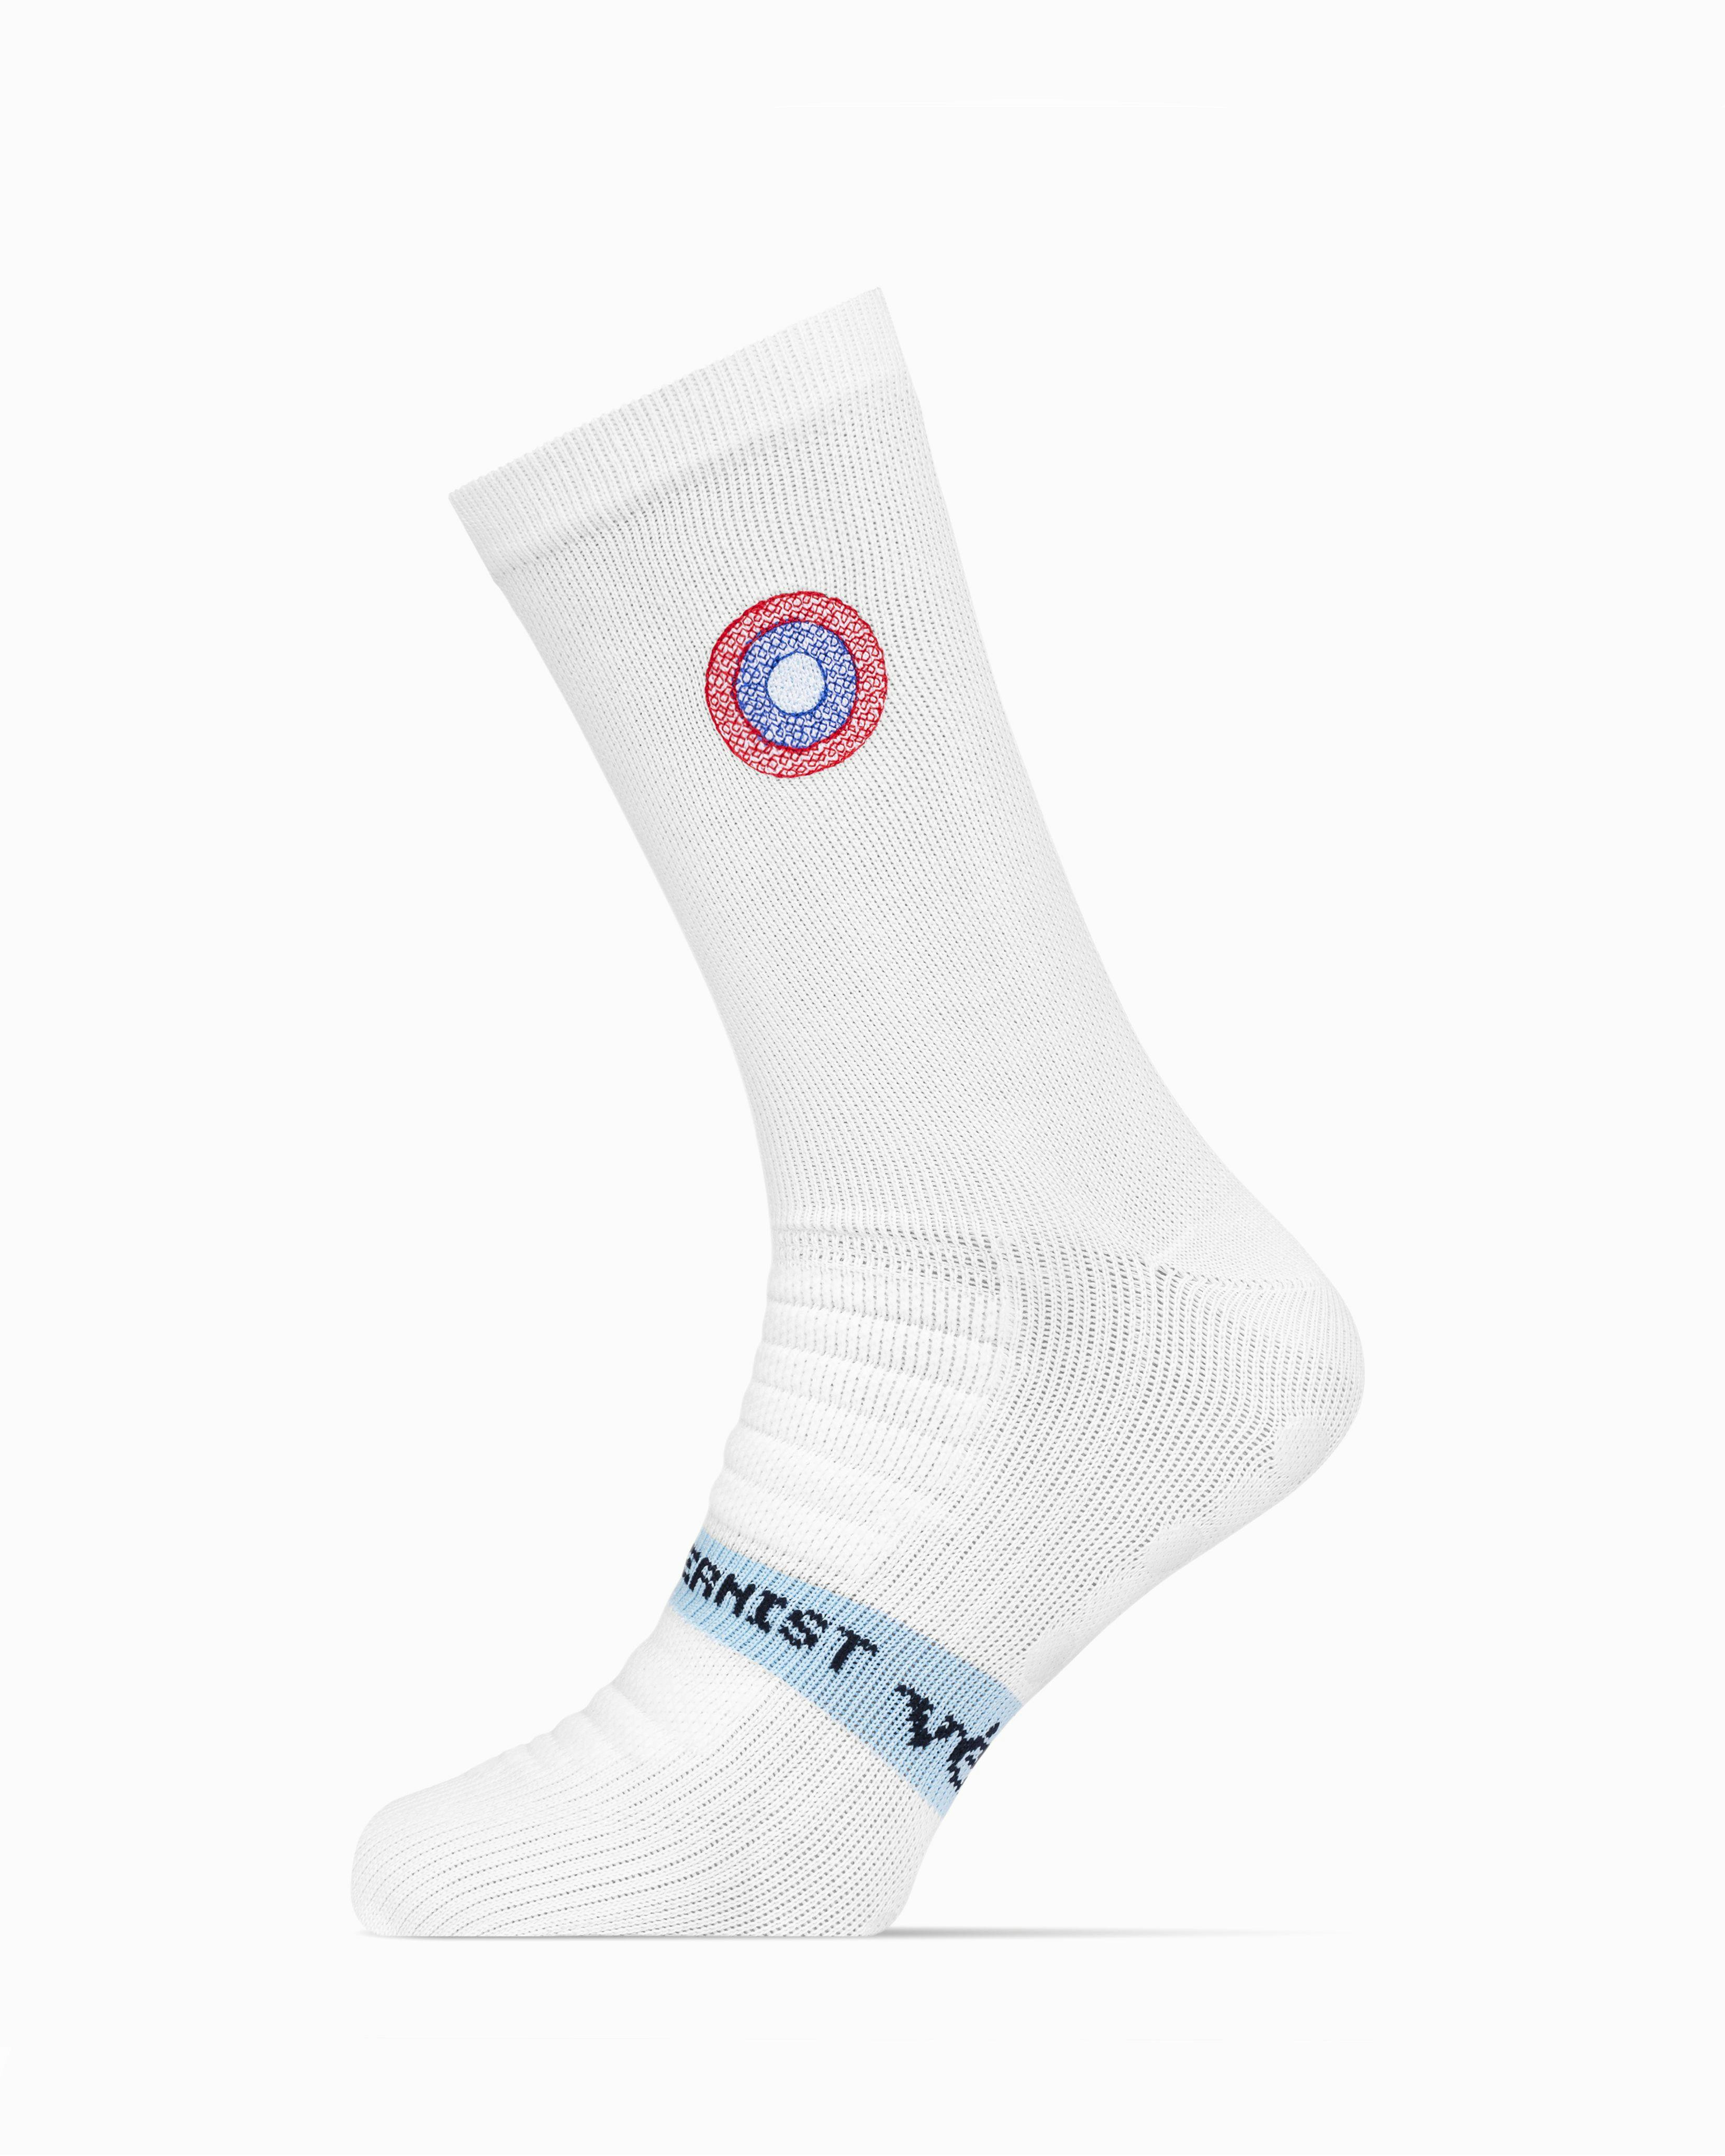 Modernist PremGripp Socks (White/Navy)